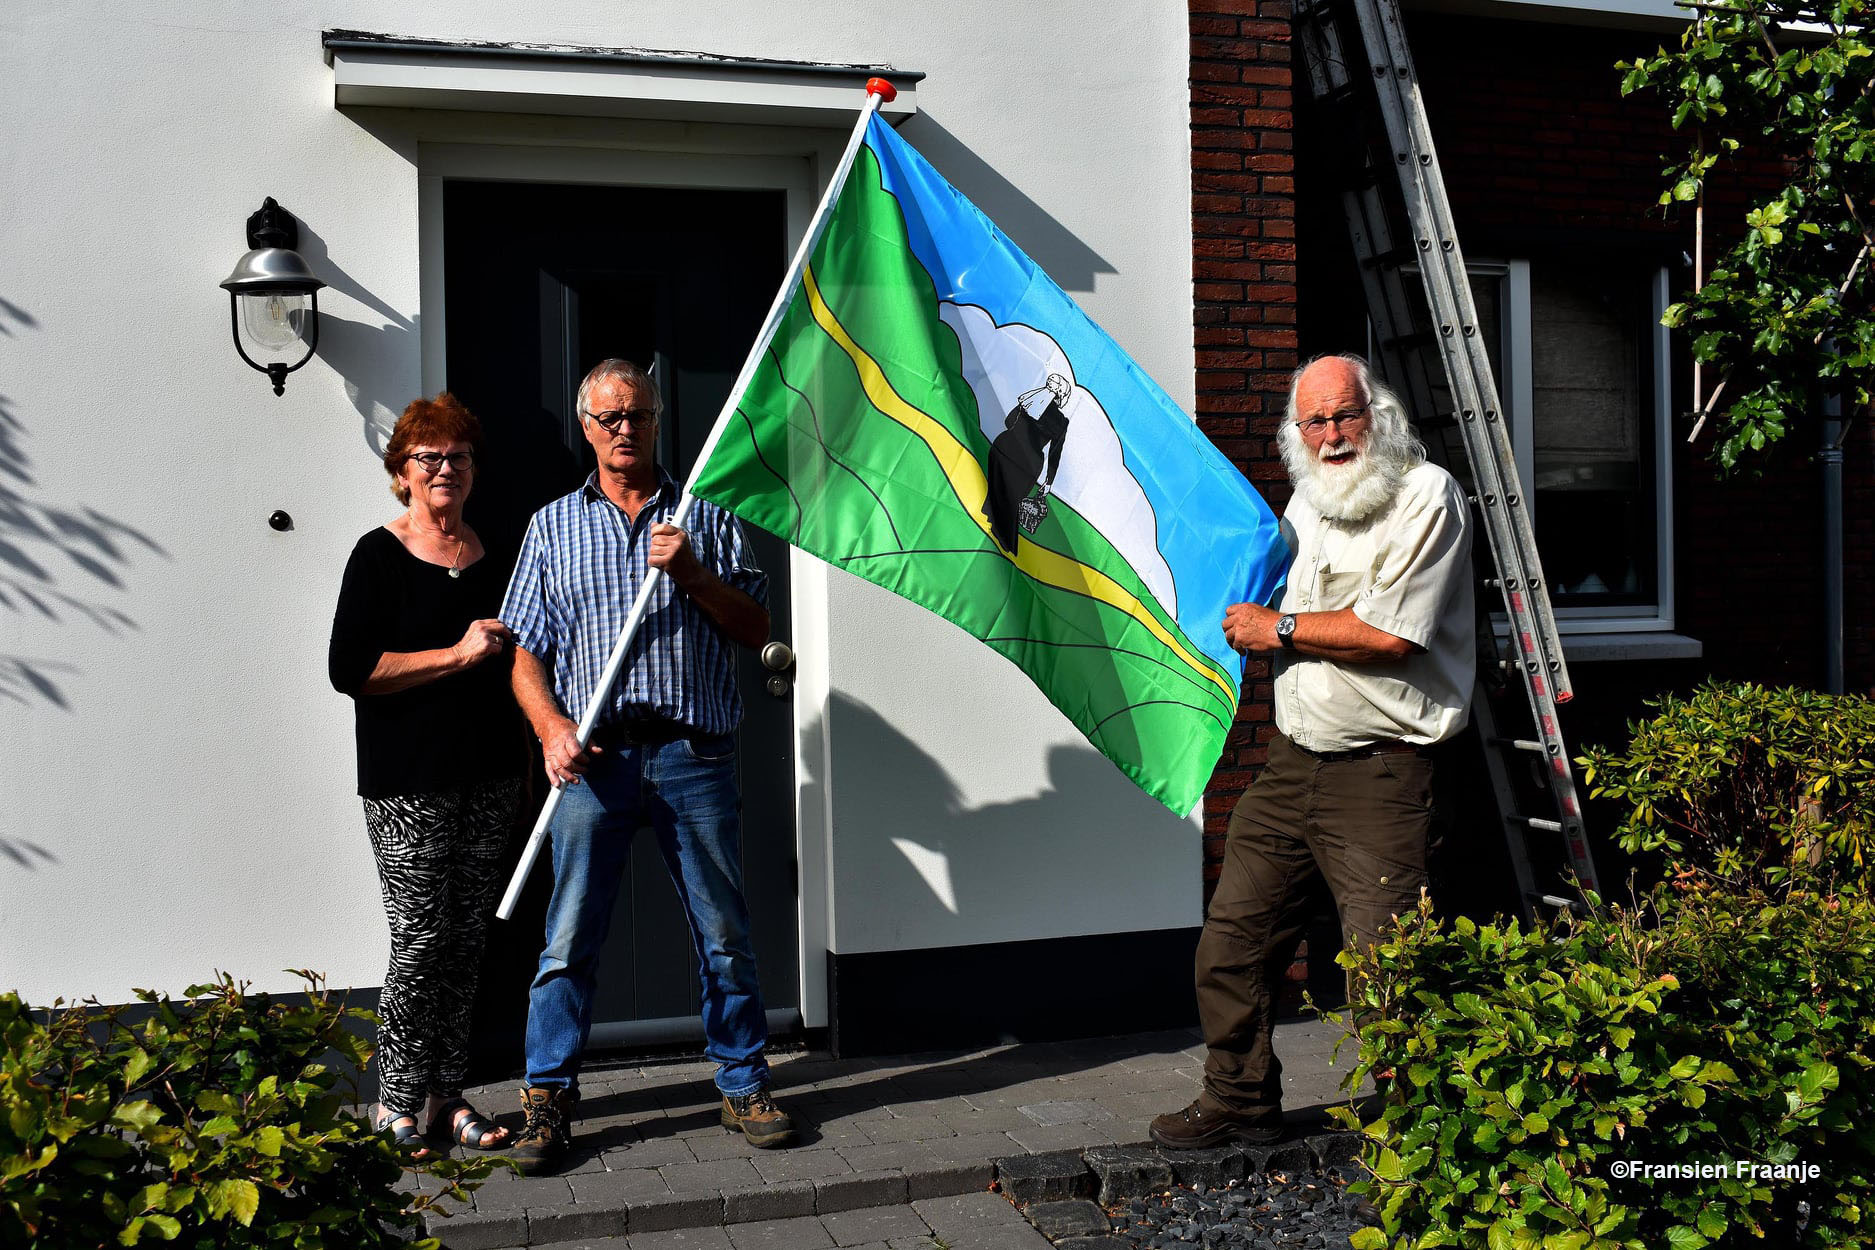 Op 24 augustus 2020 overhandigden wij de Lunterse vlag als welkomstgeschenk voor mijn broer en schoonzus Gert en Janny Fraanje, omdat zij toen inwoners van Lunteren waren geworden. En dus ook juist op deze historische plek, wat nu dus Spoorwiel heet! - Foto: ©Fransien Fraanje